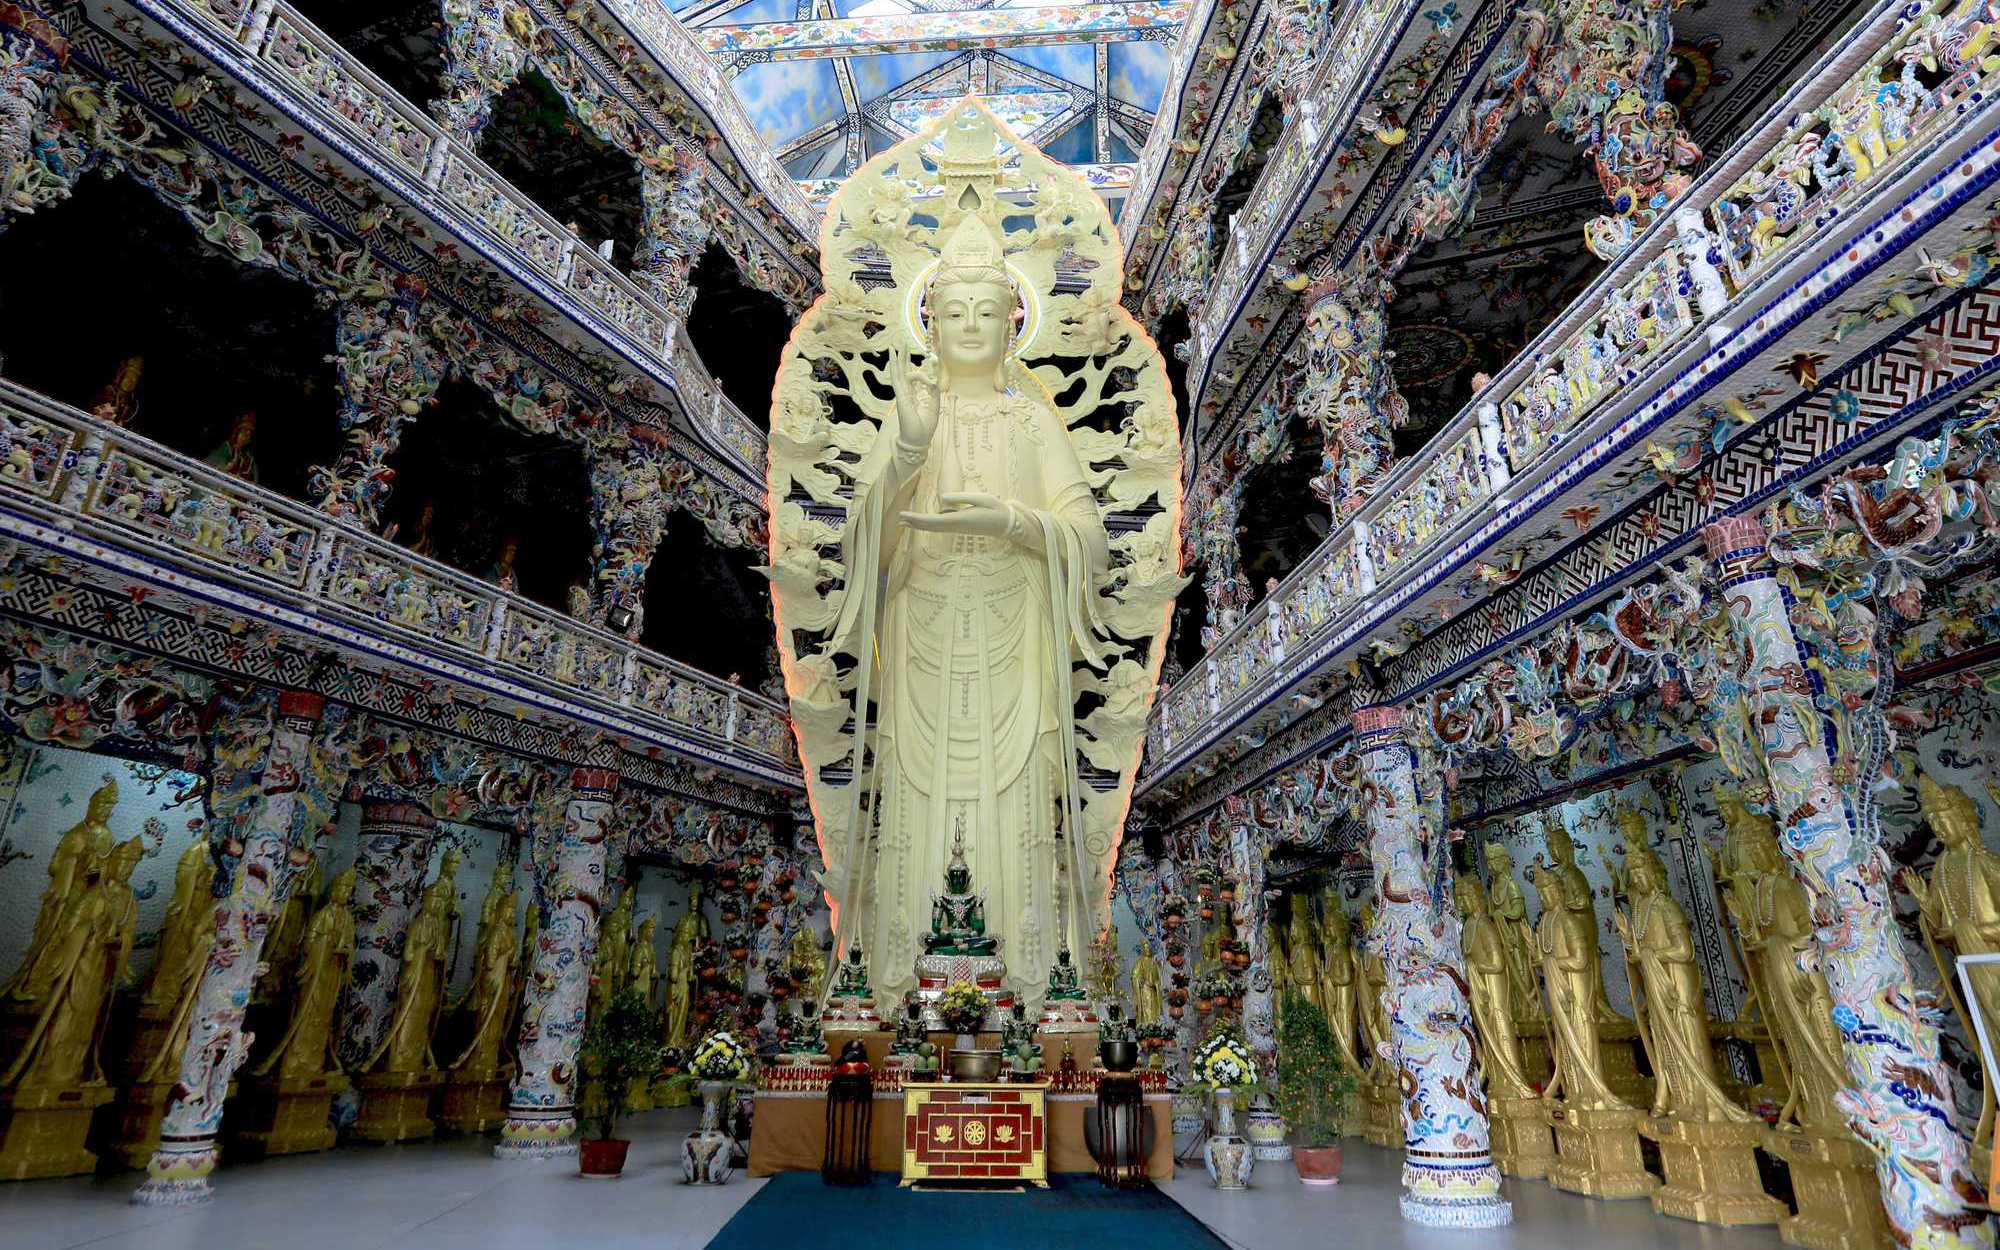 Độc đáo ngôi chùa khảm hàng triệu mảnh sành, sứ đầy màu sắc thu hút khách du lịch